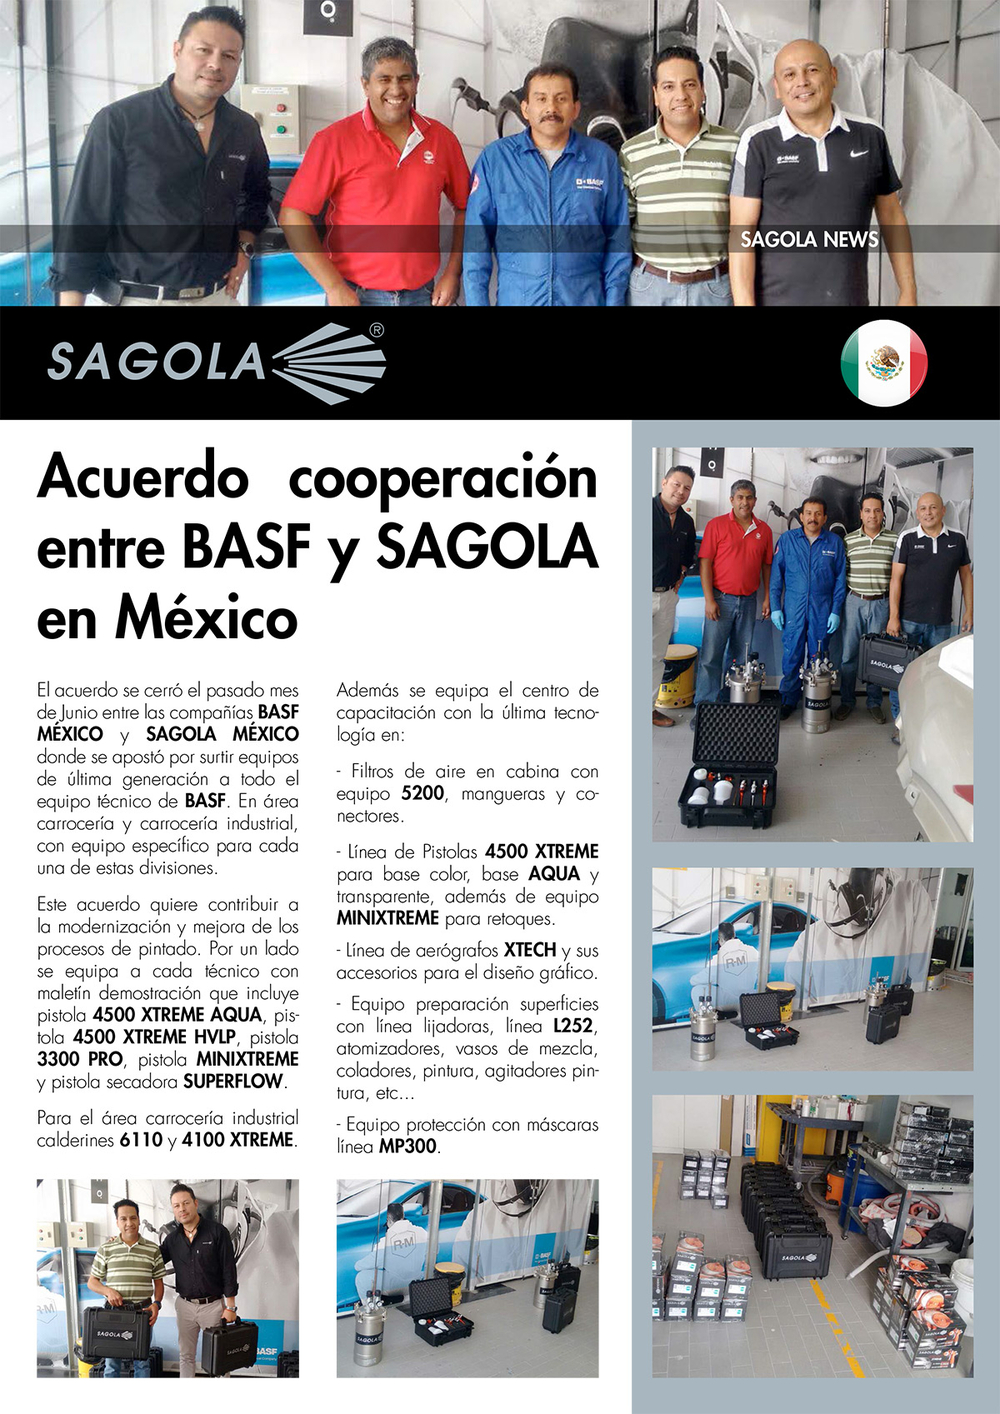 Acuerdo cooperación entre BASF y SAGOLA en México